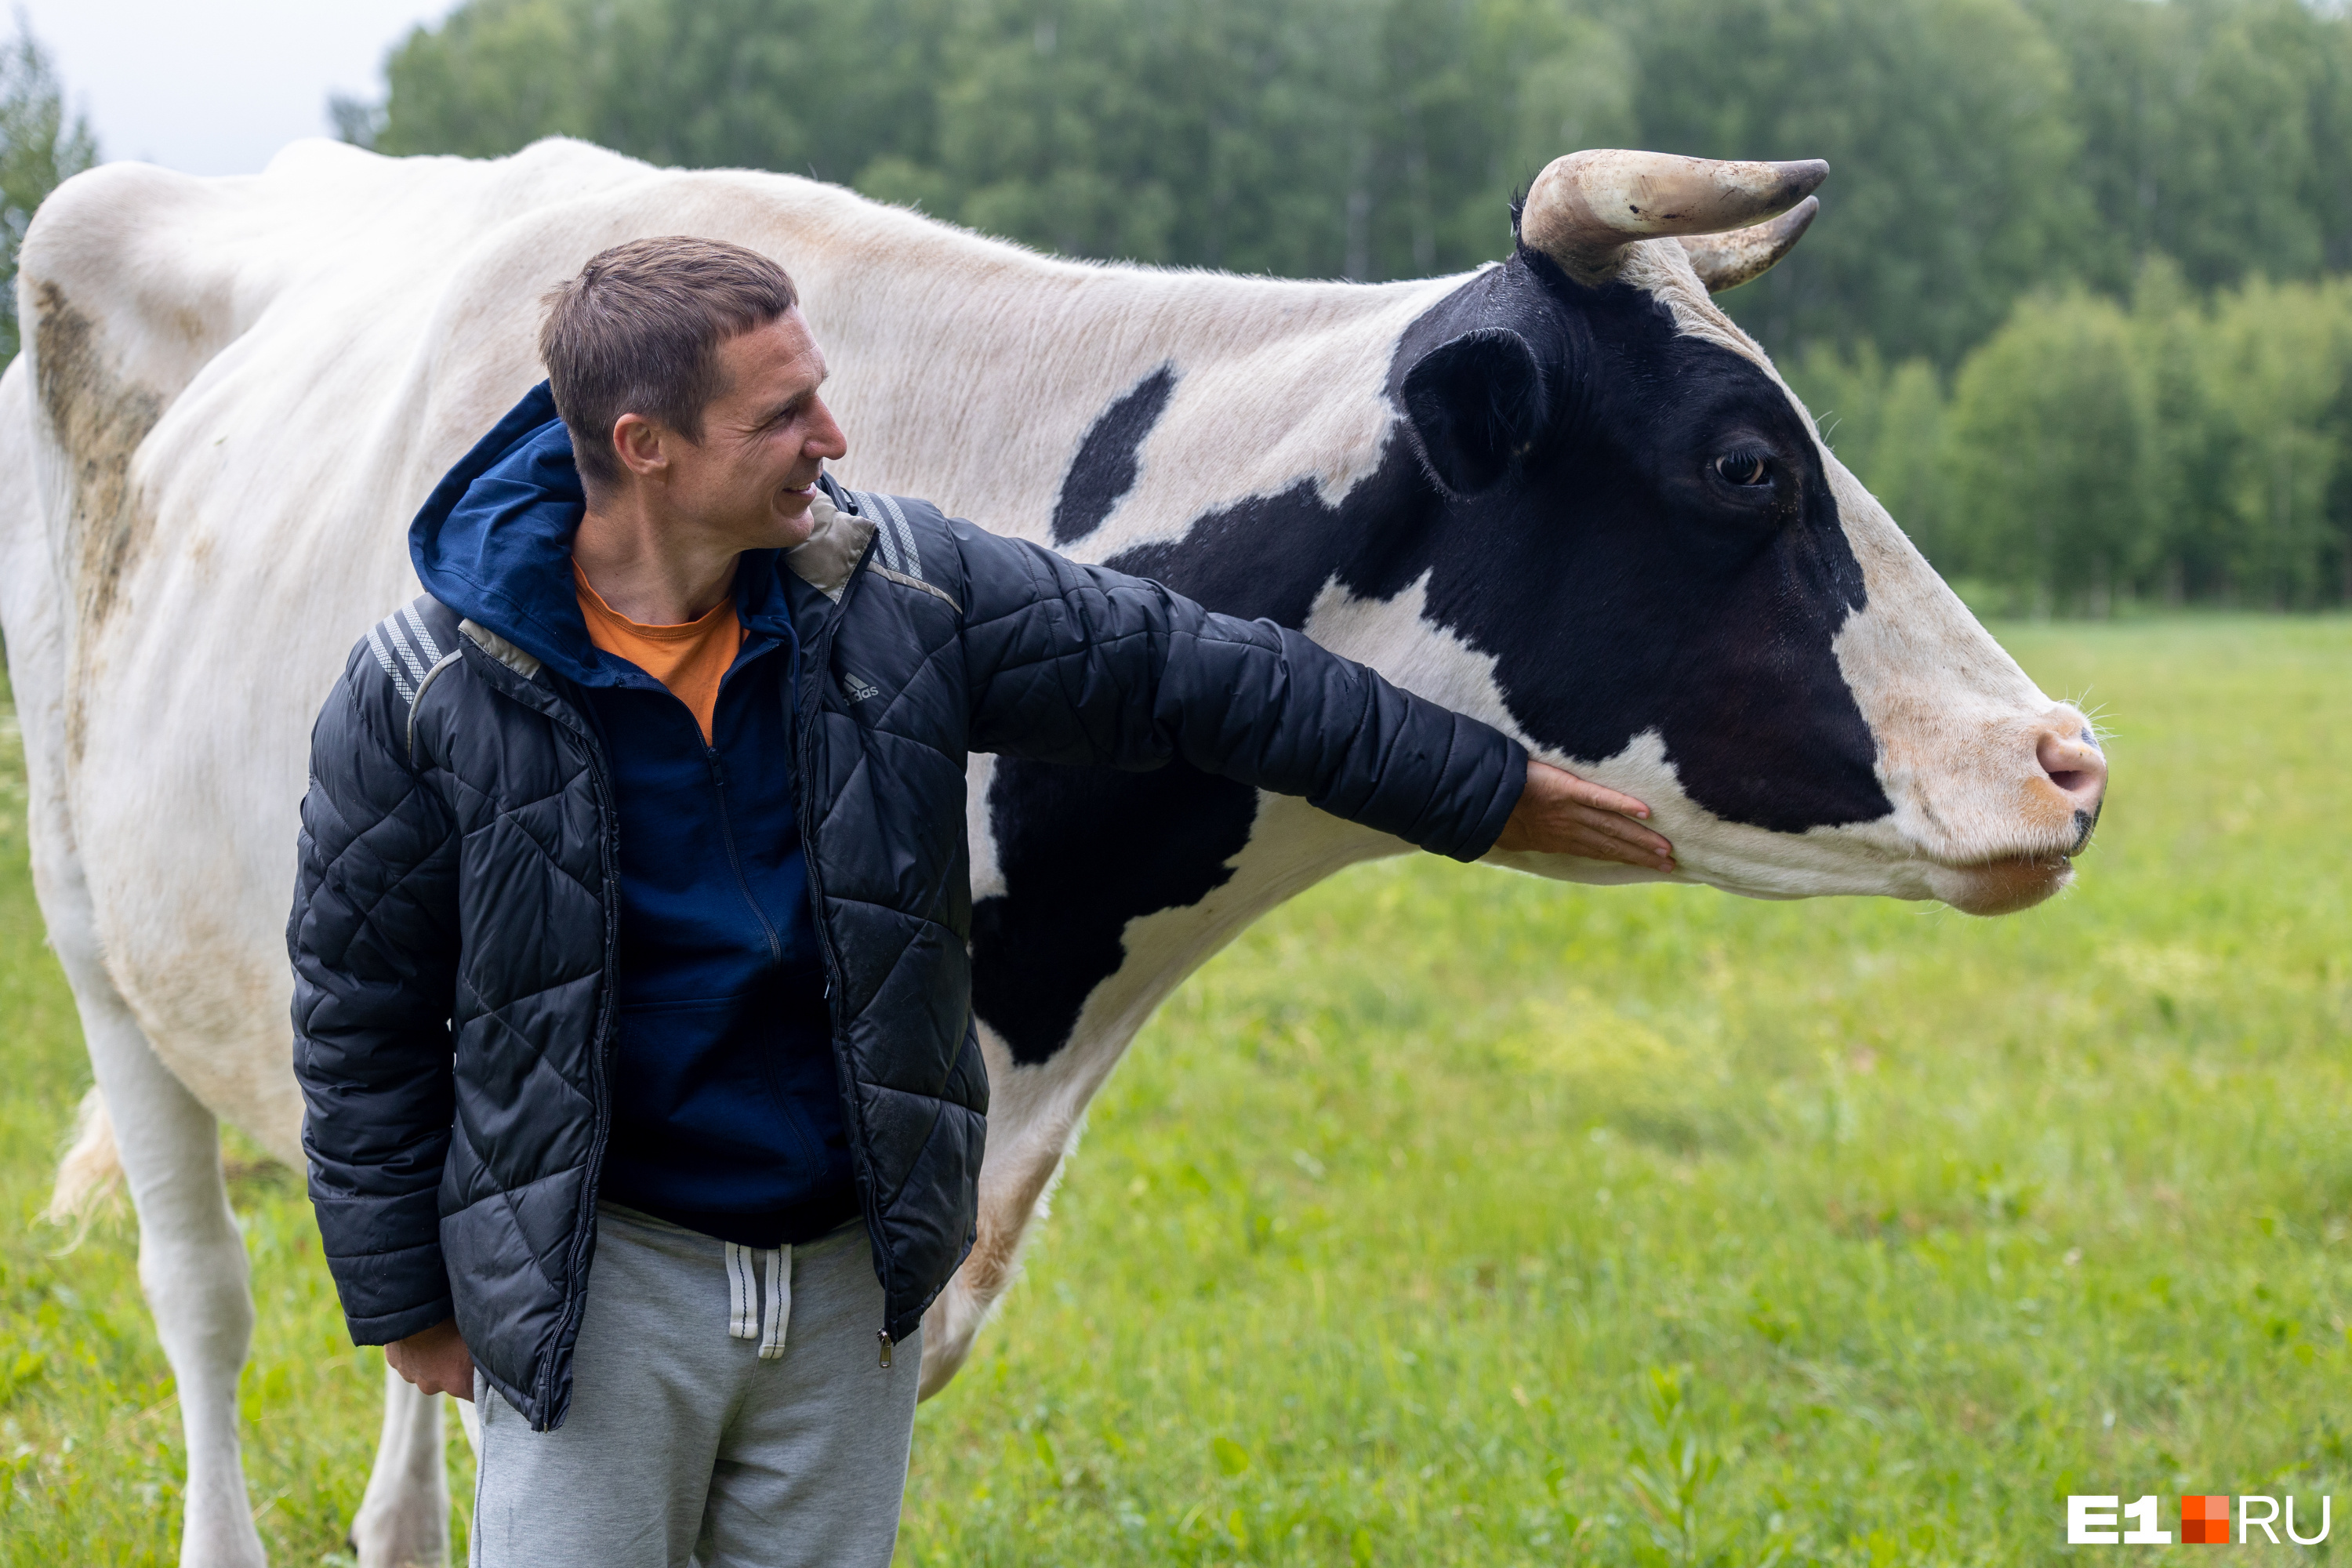 Виктор быстро нашел с коровами общий язык, хотя раньше никогда не занимался сельским хозяйством